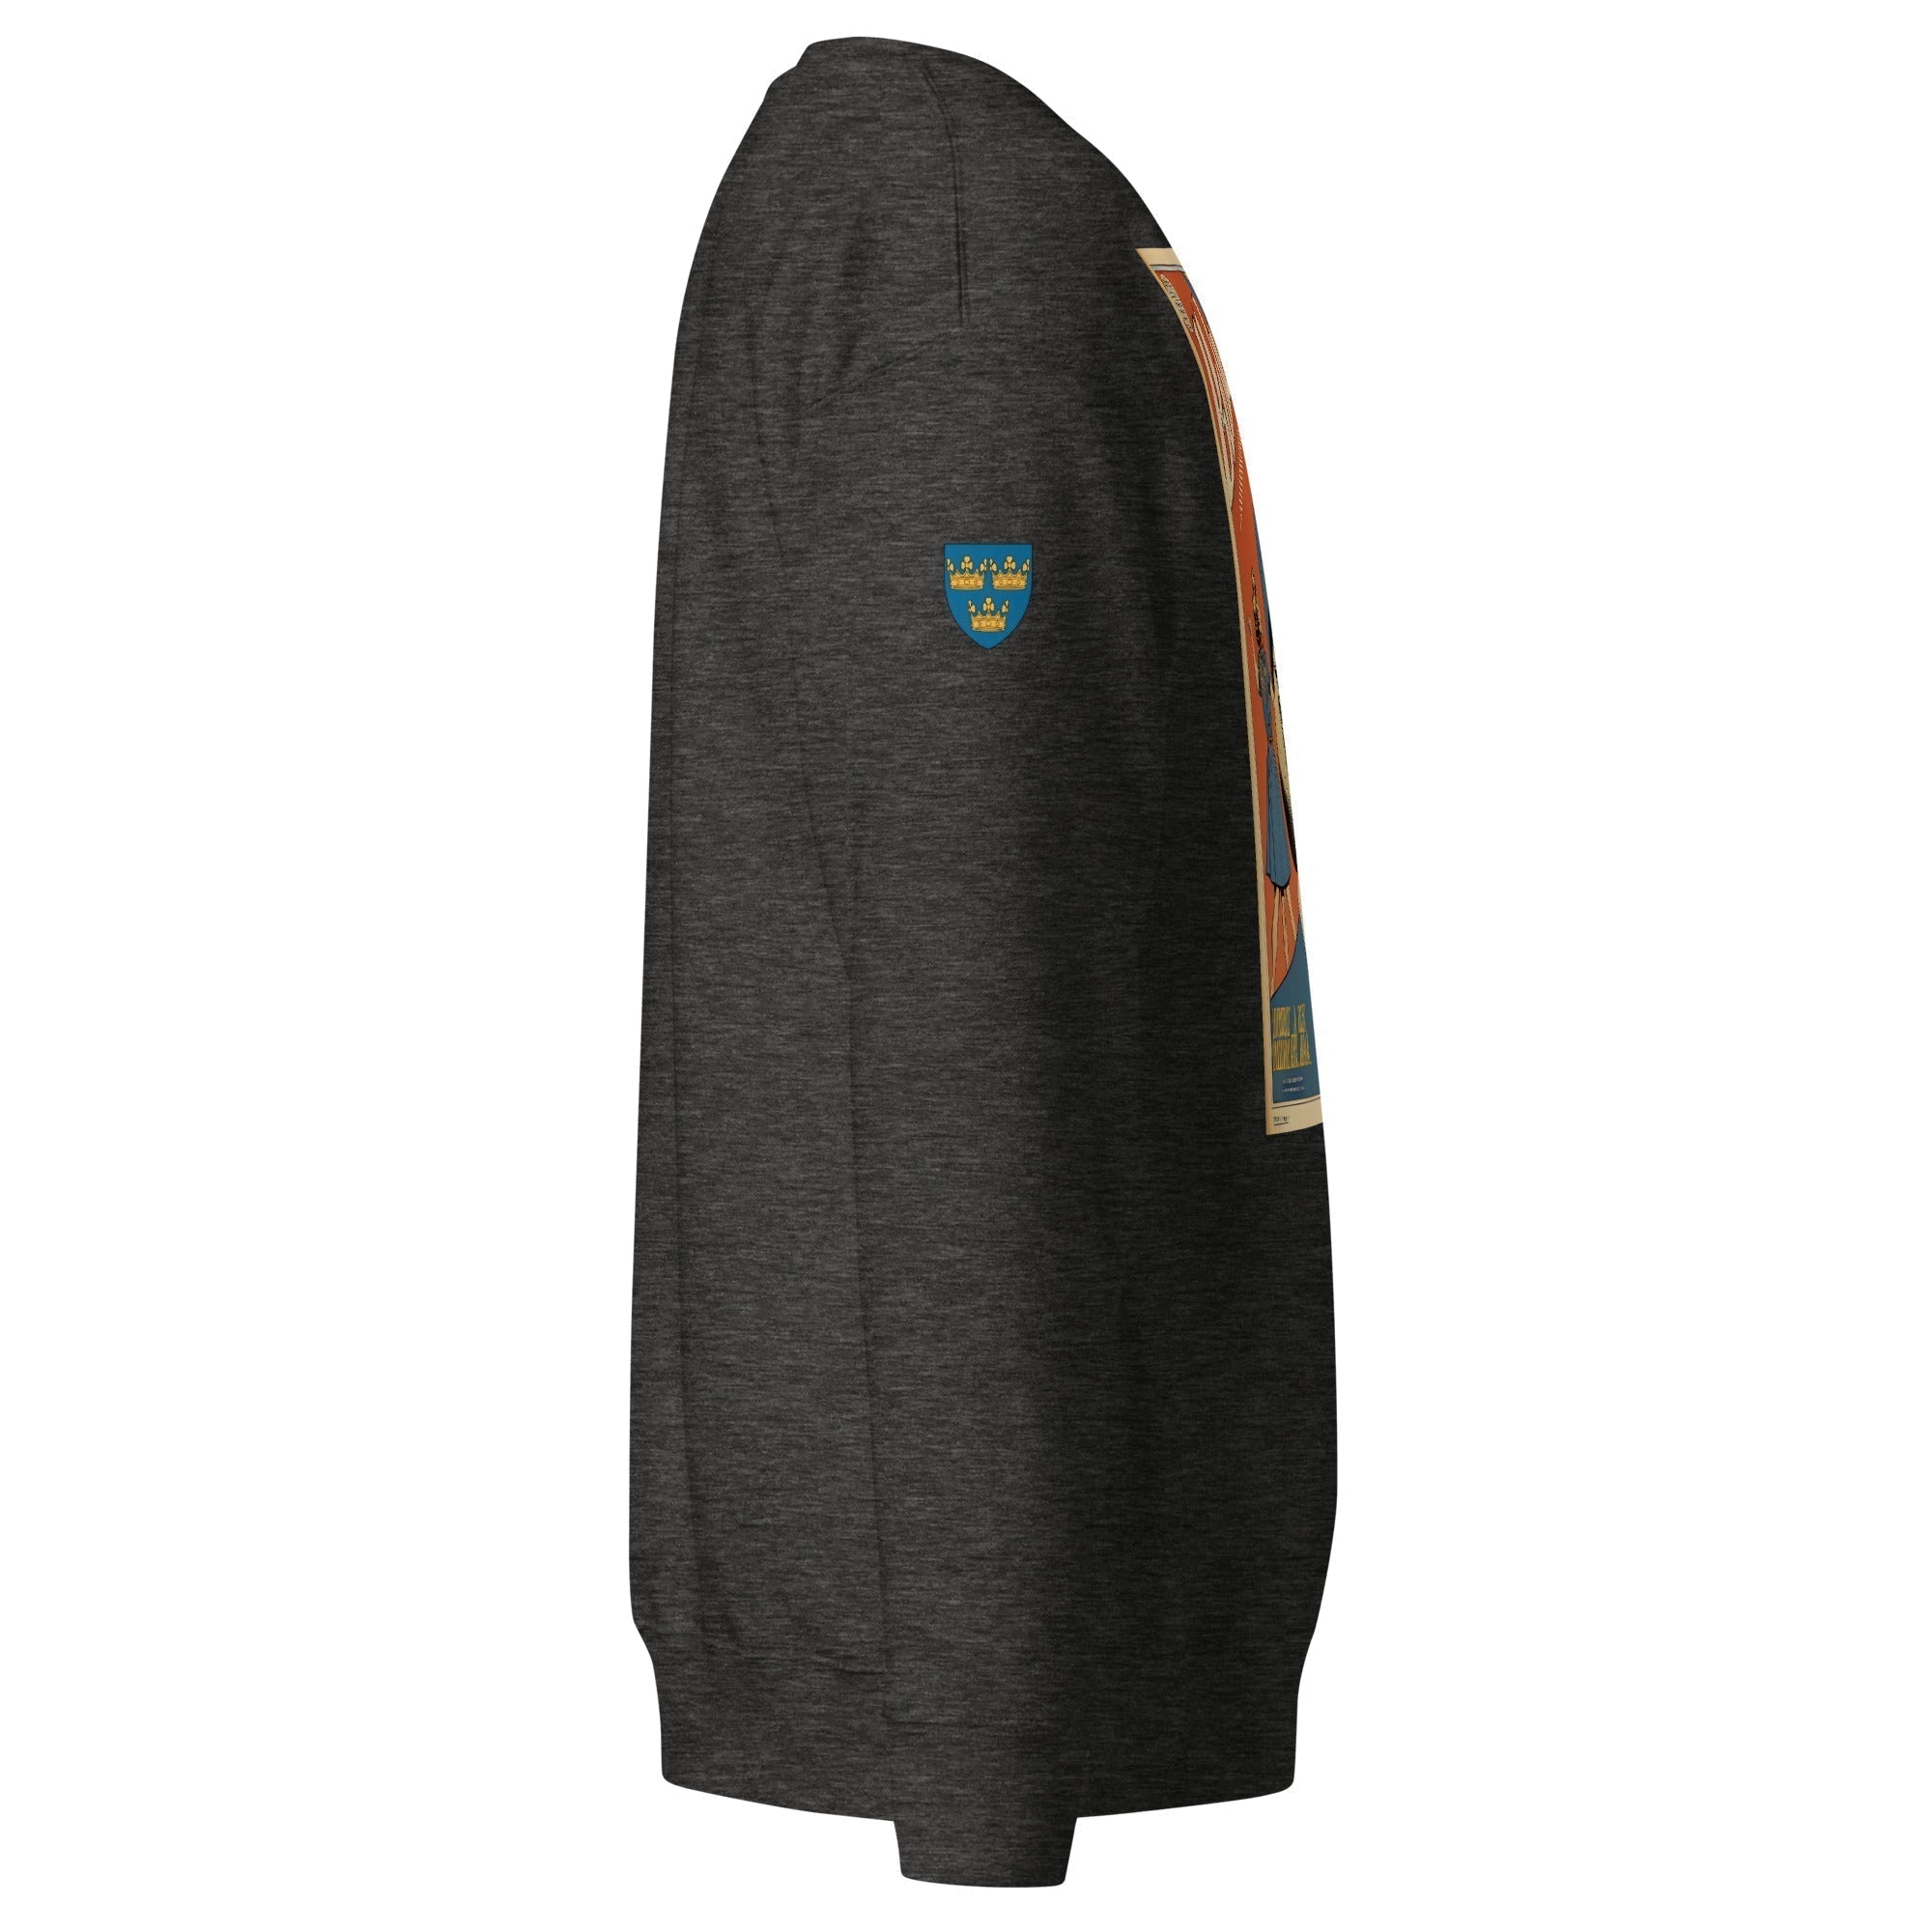 Unisex Premium Sweatshirt - Swedish Vintage Fashion Series v.47 - GRAPHIC T-SHIRTS